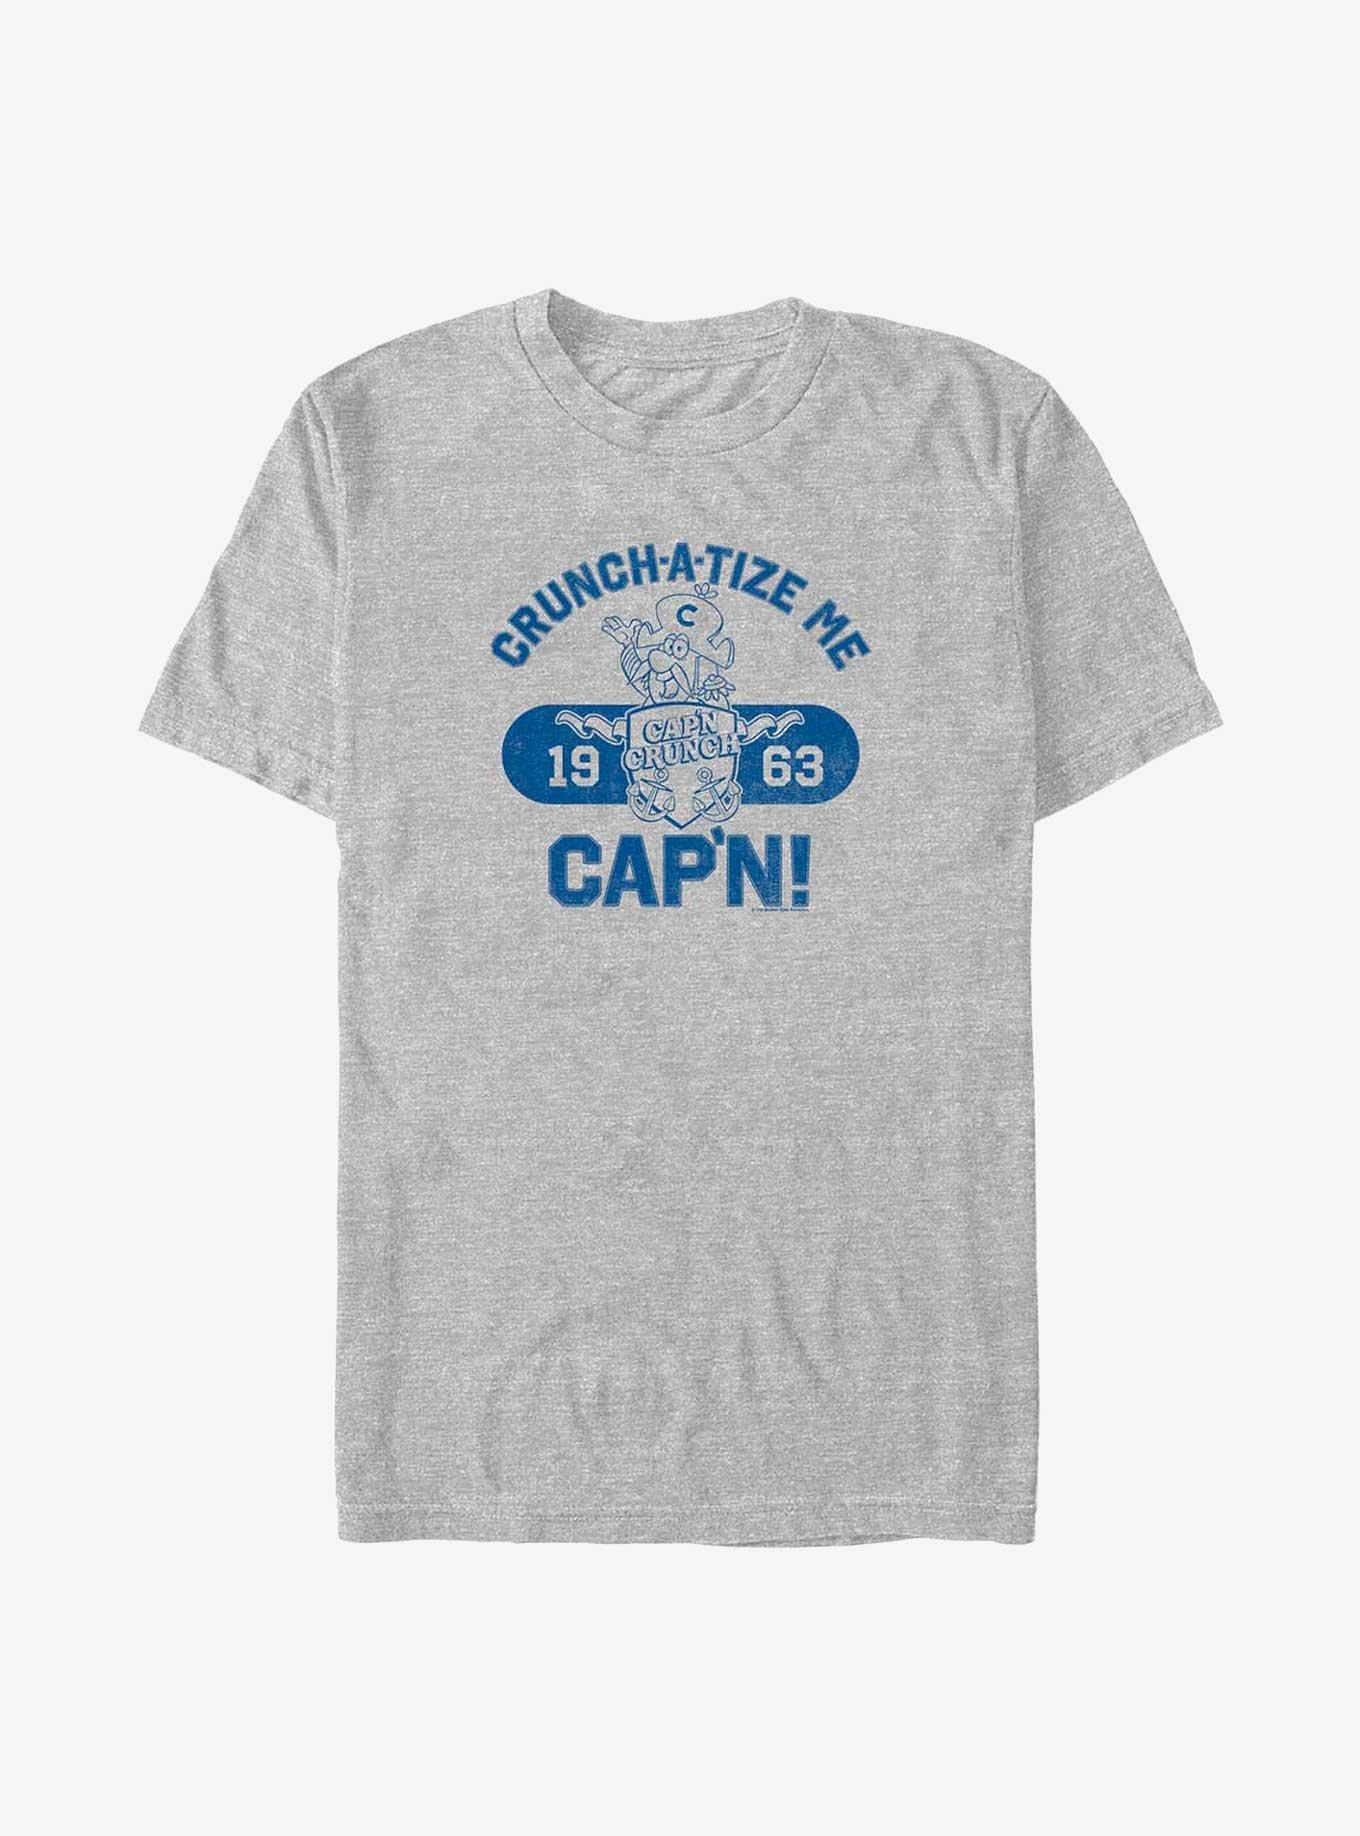 Capn Crunch Collegiate T-Shirt, ATH HTR, hi-res